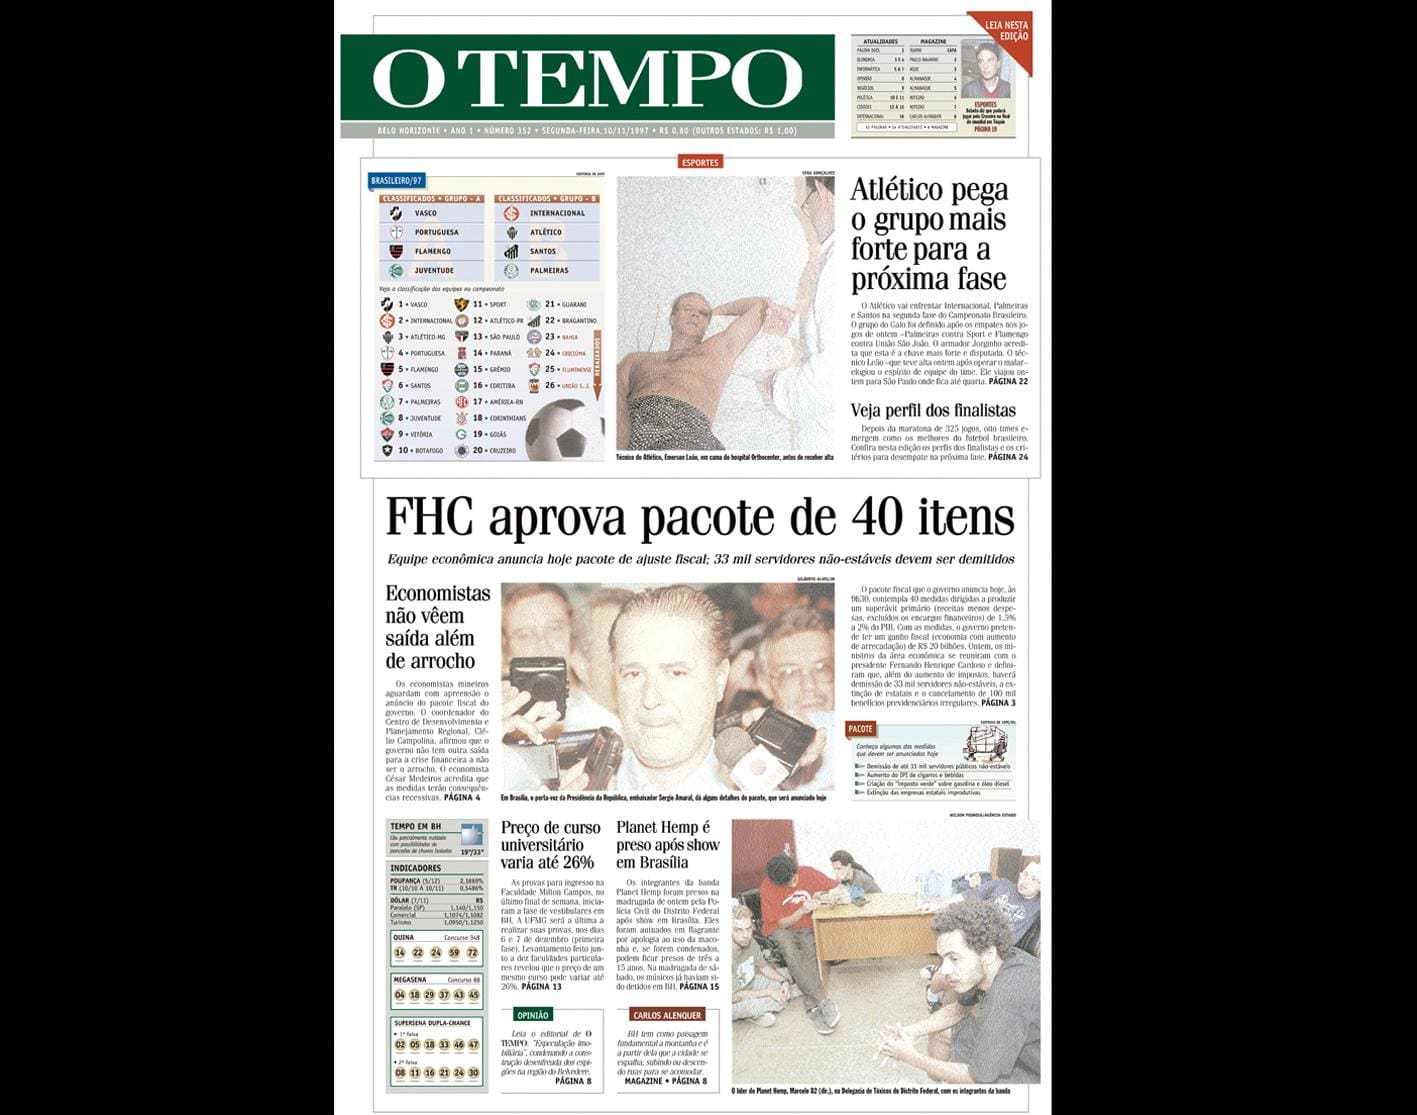 Capa do jornal O TEMPO no dia 10.11.1997; resgate do acervo marca as comemorações dos 25 anos da publicação